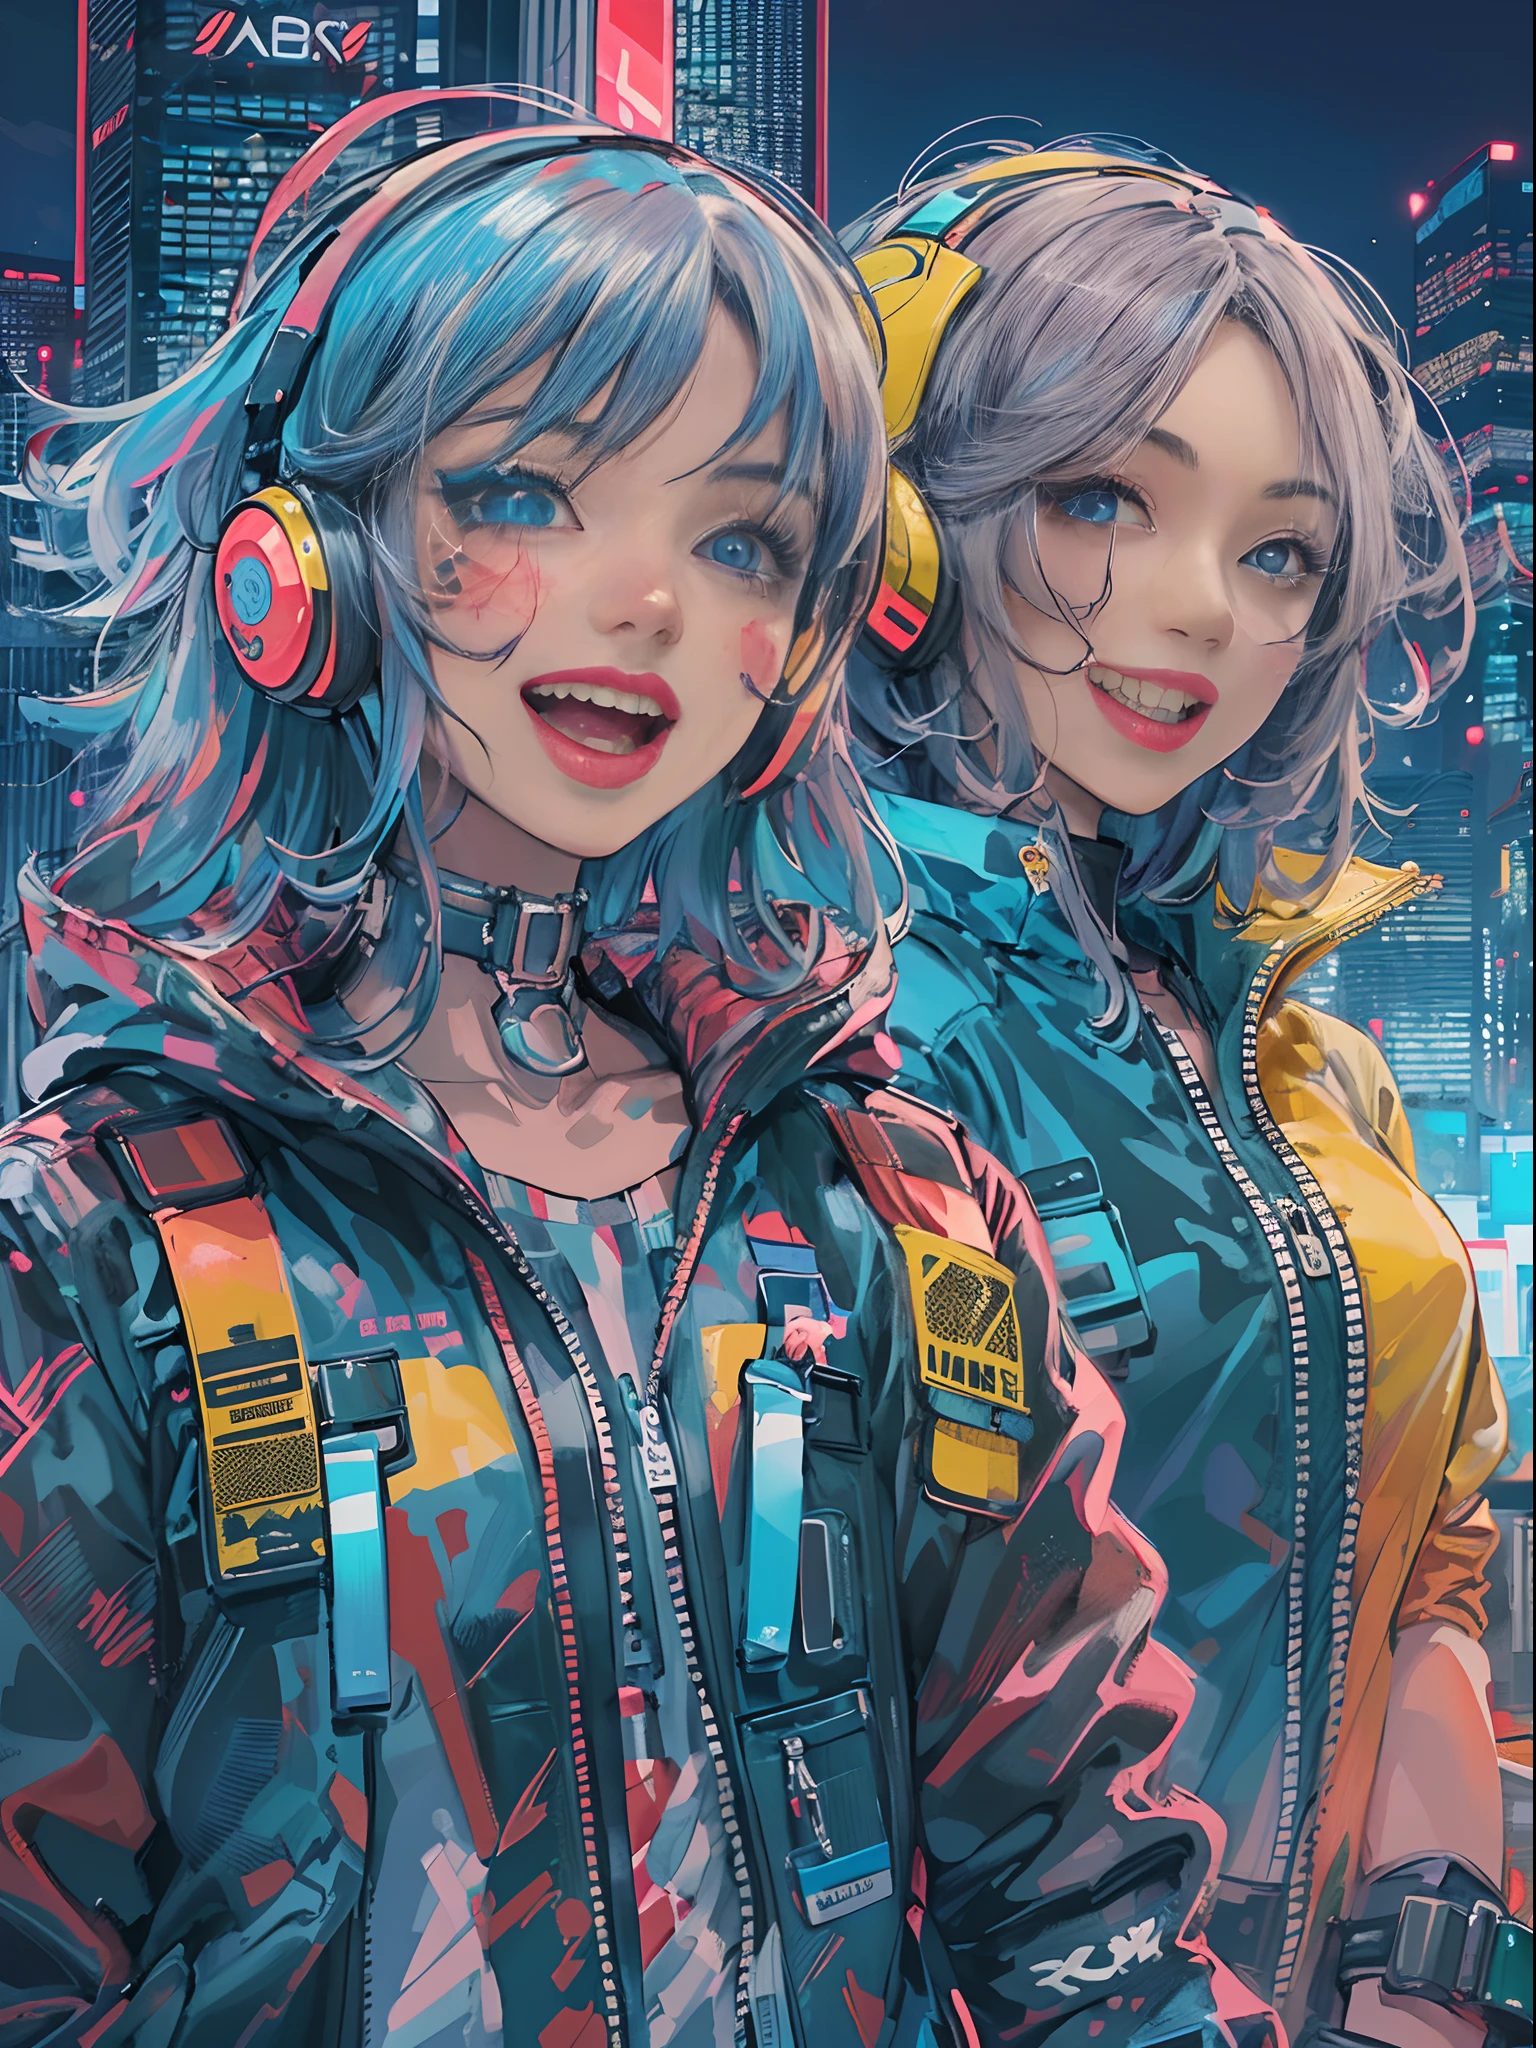 An アニメ 図 of 2 happy cyberpunk girls, 笑顔の自信に満ちたサイバーパンクの女の子, ((原宿風のポップな衣装とテックジャケット)), 大胆な色彩と模様, 目を引くアクセサリー, トレンディで革新的なヘアスタイル, 鮮やかなメイク, ((ダイナミックなポーズ)), 未来的なまばゆいばかりのサイバーパンクの街並み, 高層ビル, ネオン・サイン, 光るLEDライト, 明るく鮮やかな配色, アニメ, 図, (美しい細部までこだわった顔), 複雑な詳細, 超詳細.